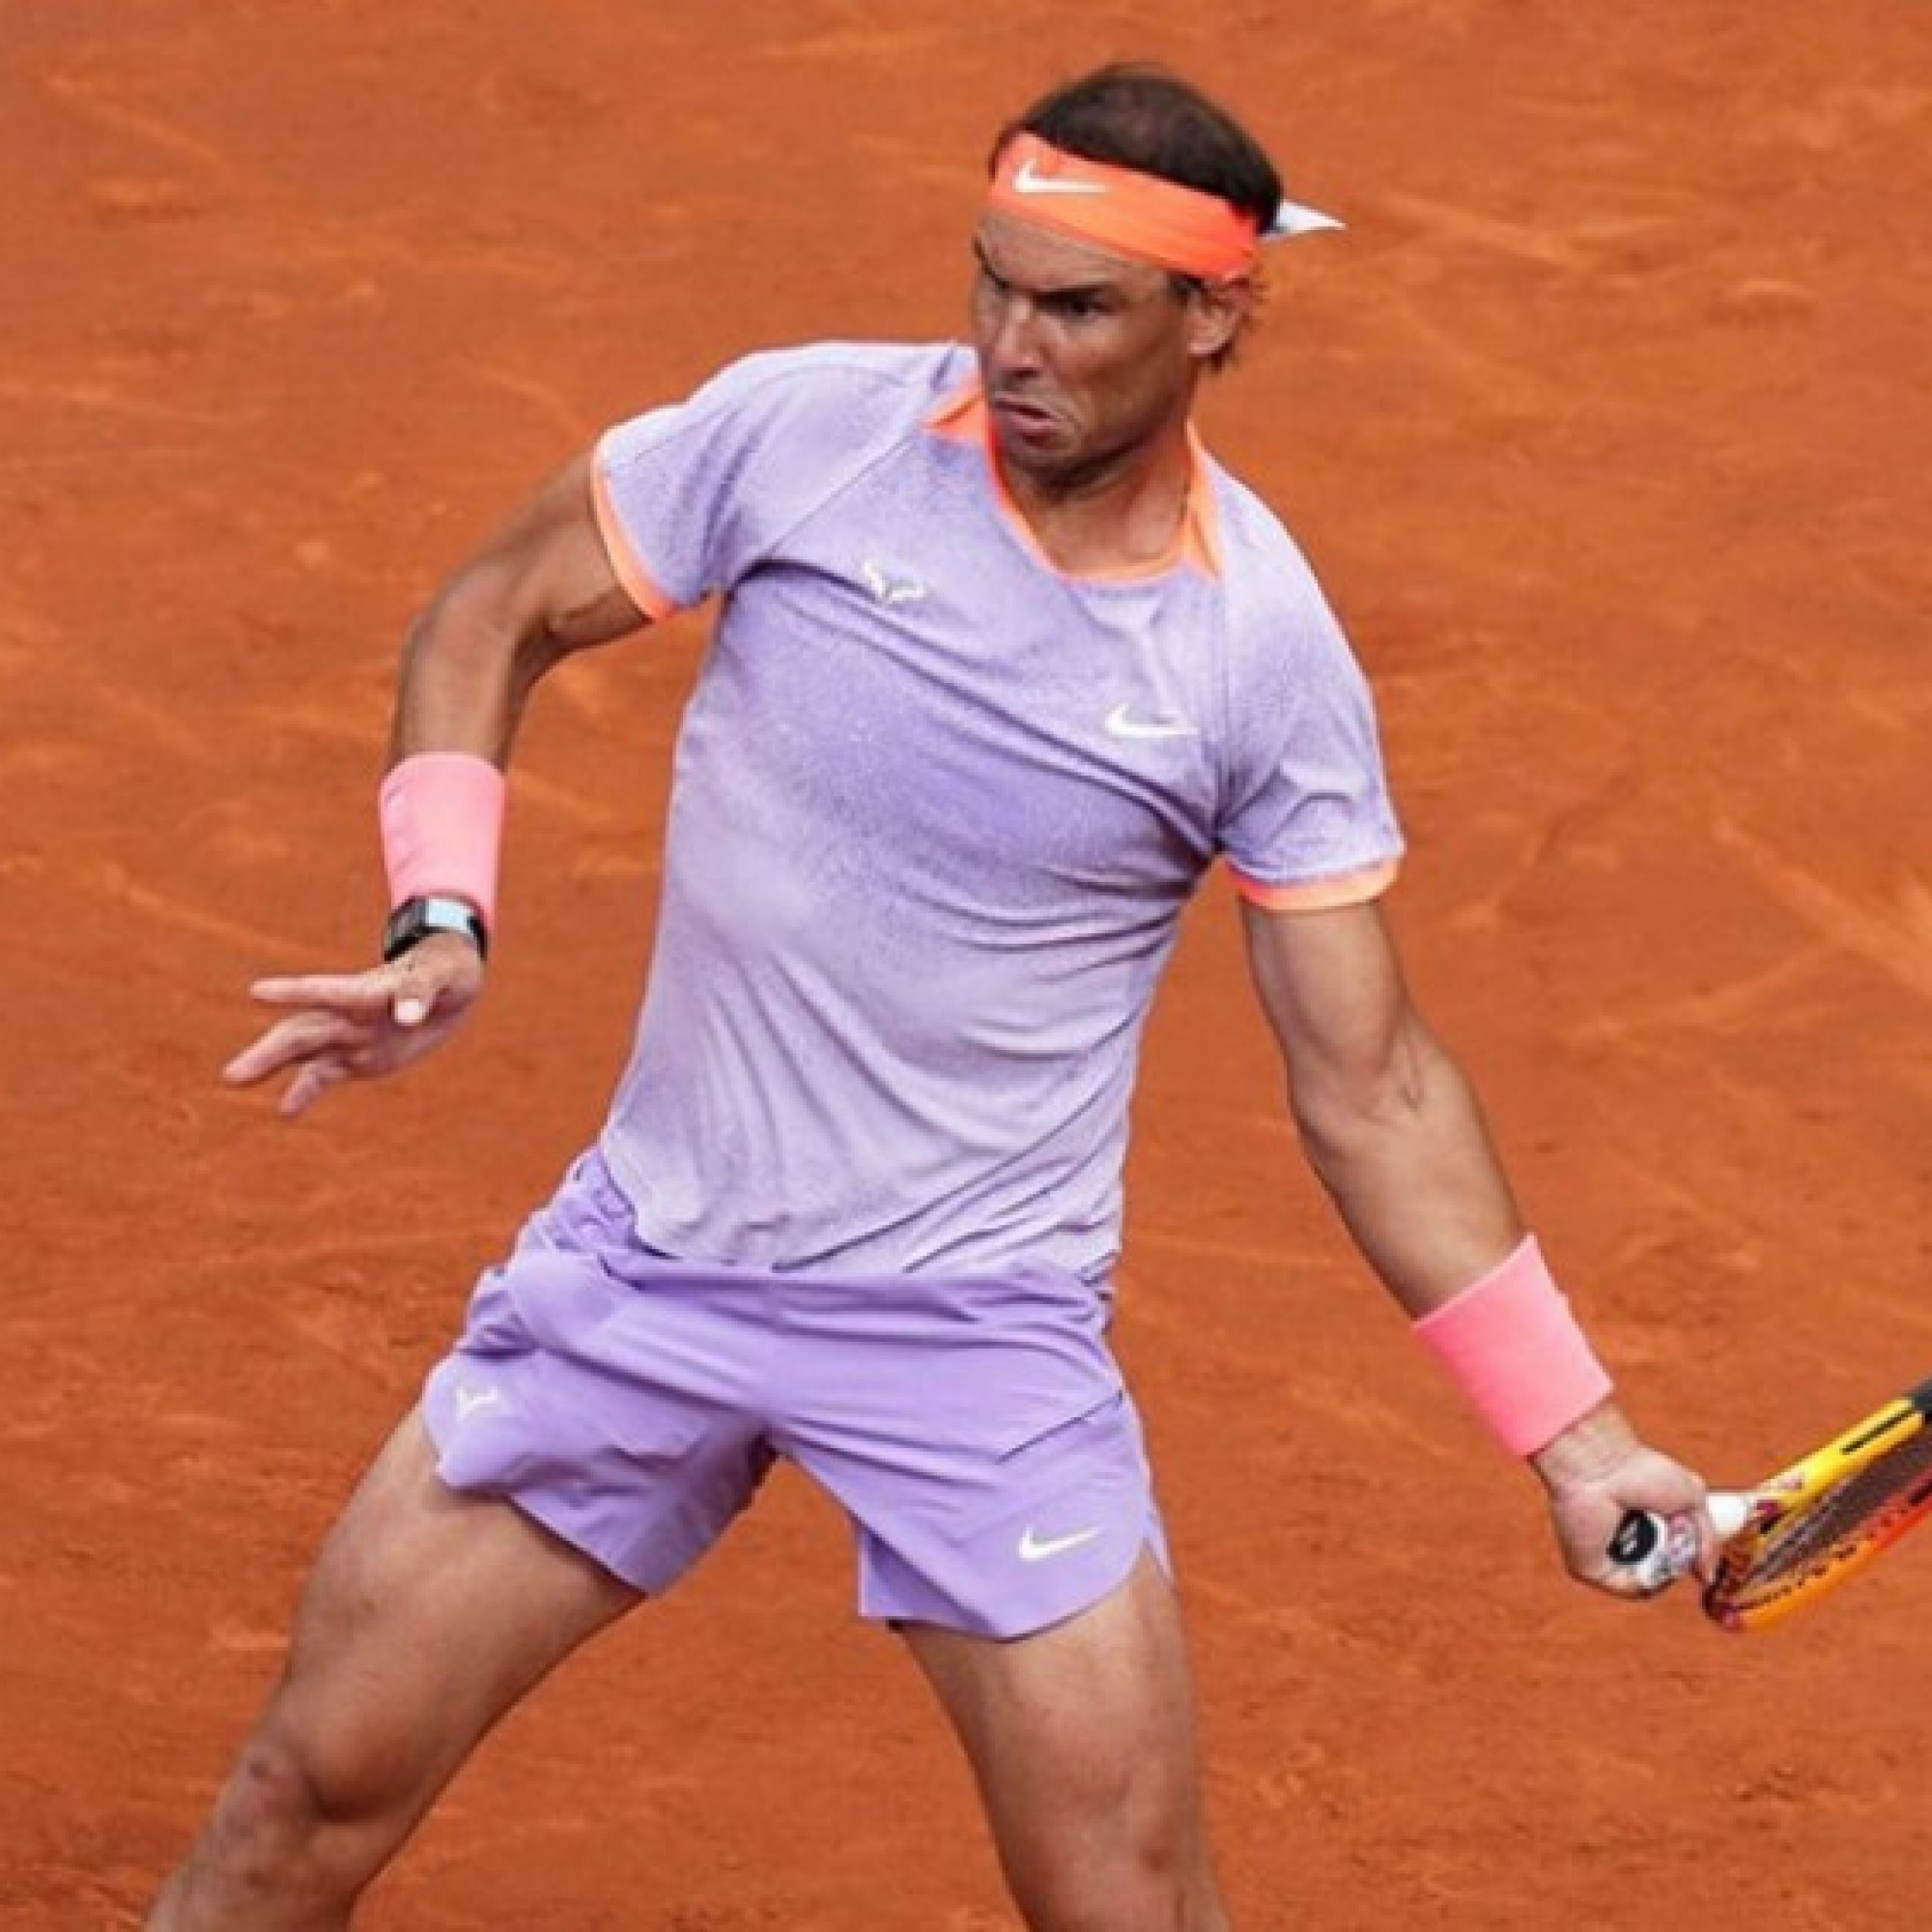 Đua vô địch Roland Garros: Nadal được đánh giá cao, cảnh báo Djokovic